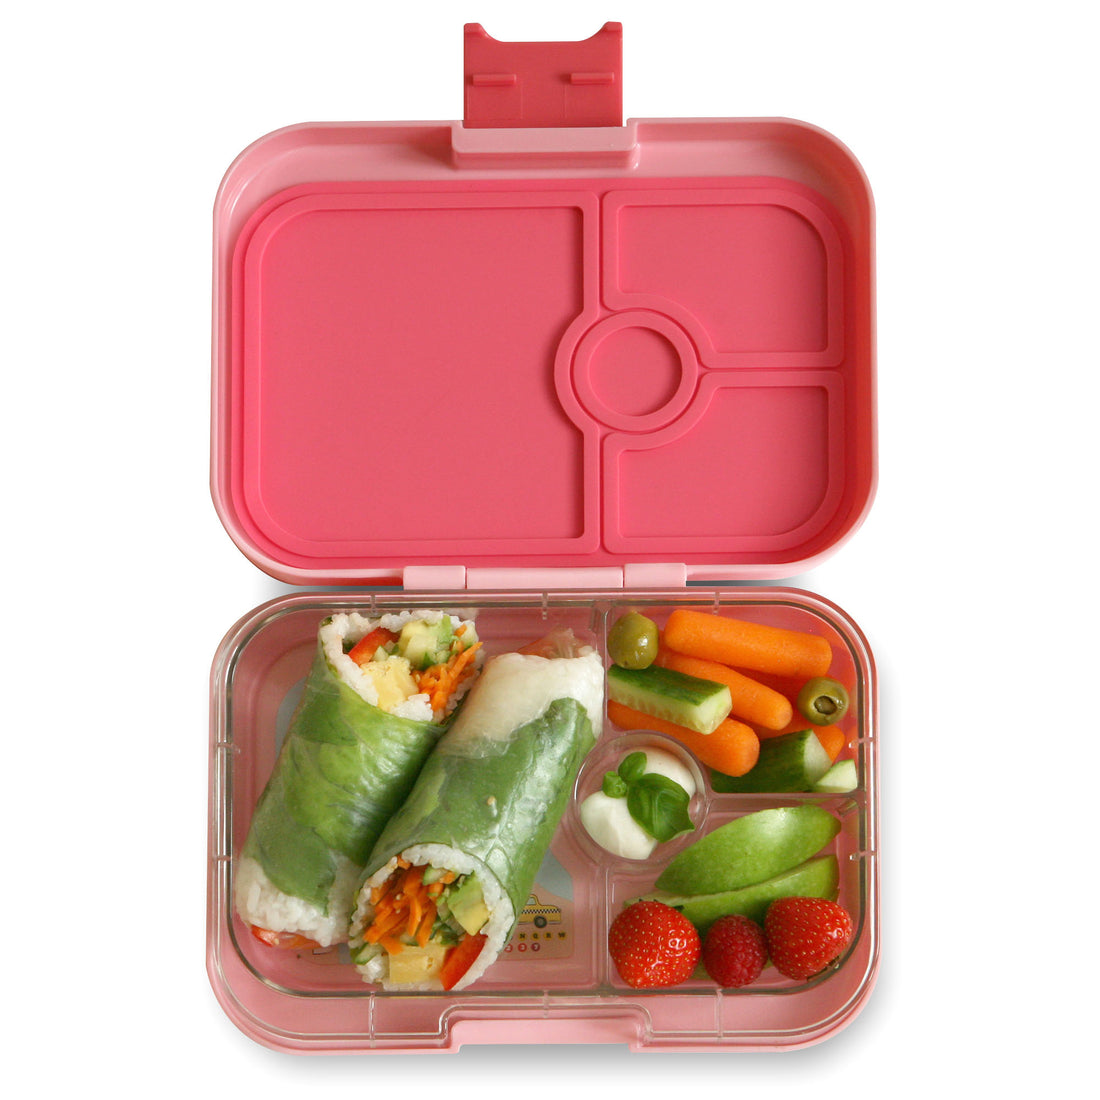 yumbox-panino-gramercy-pink-nyc-4-compartment-lunch-box- (4)